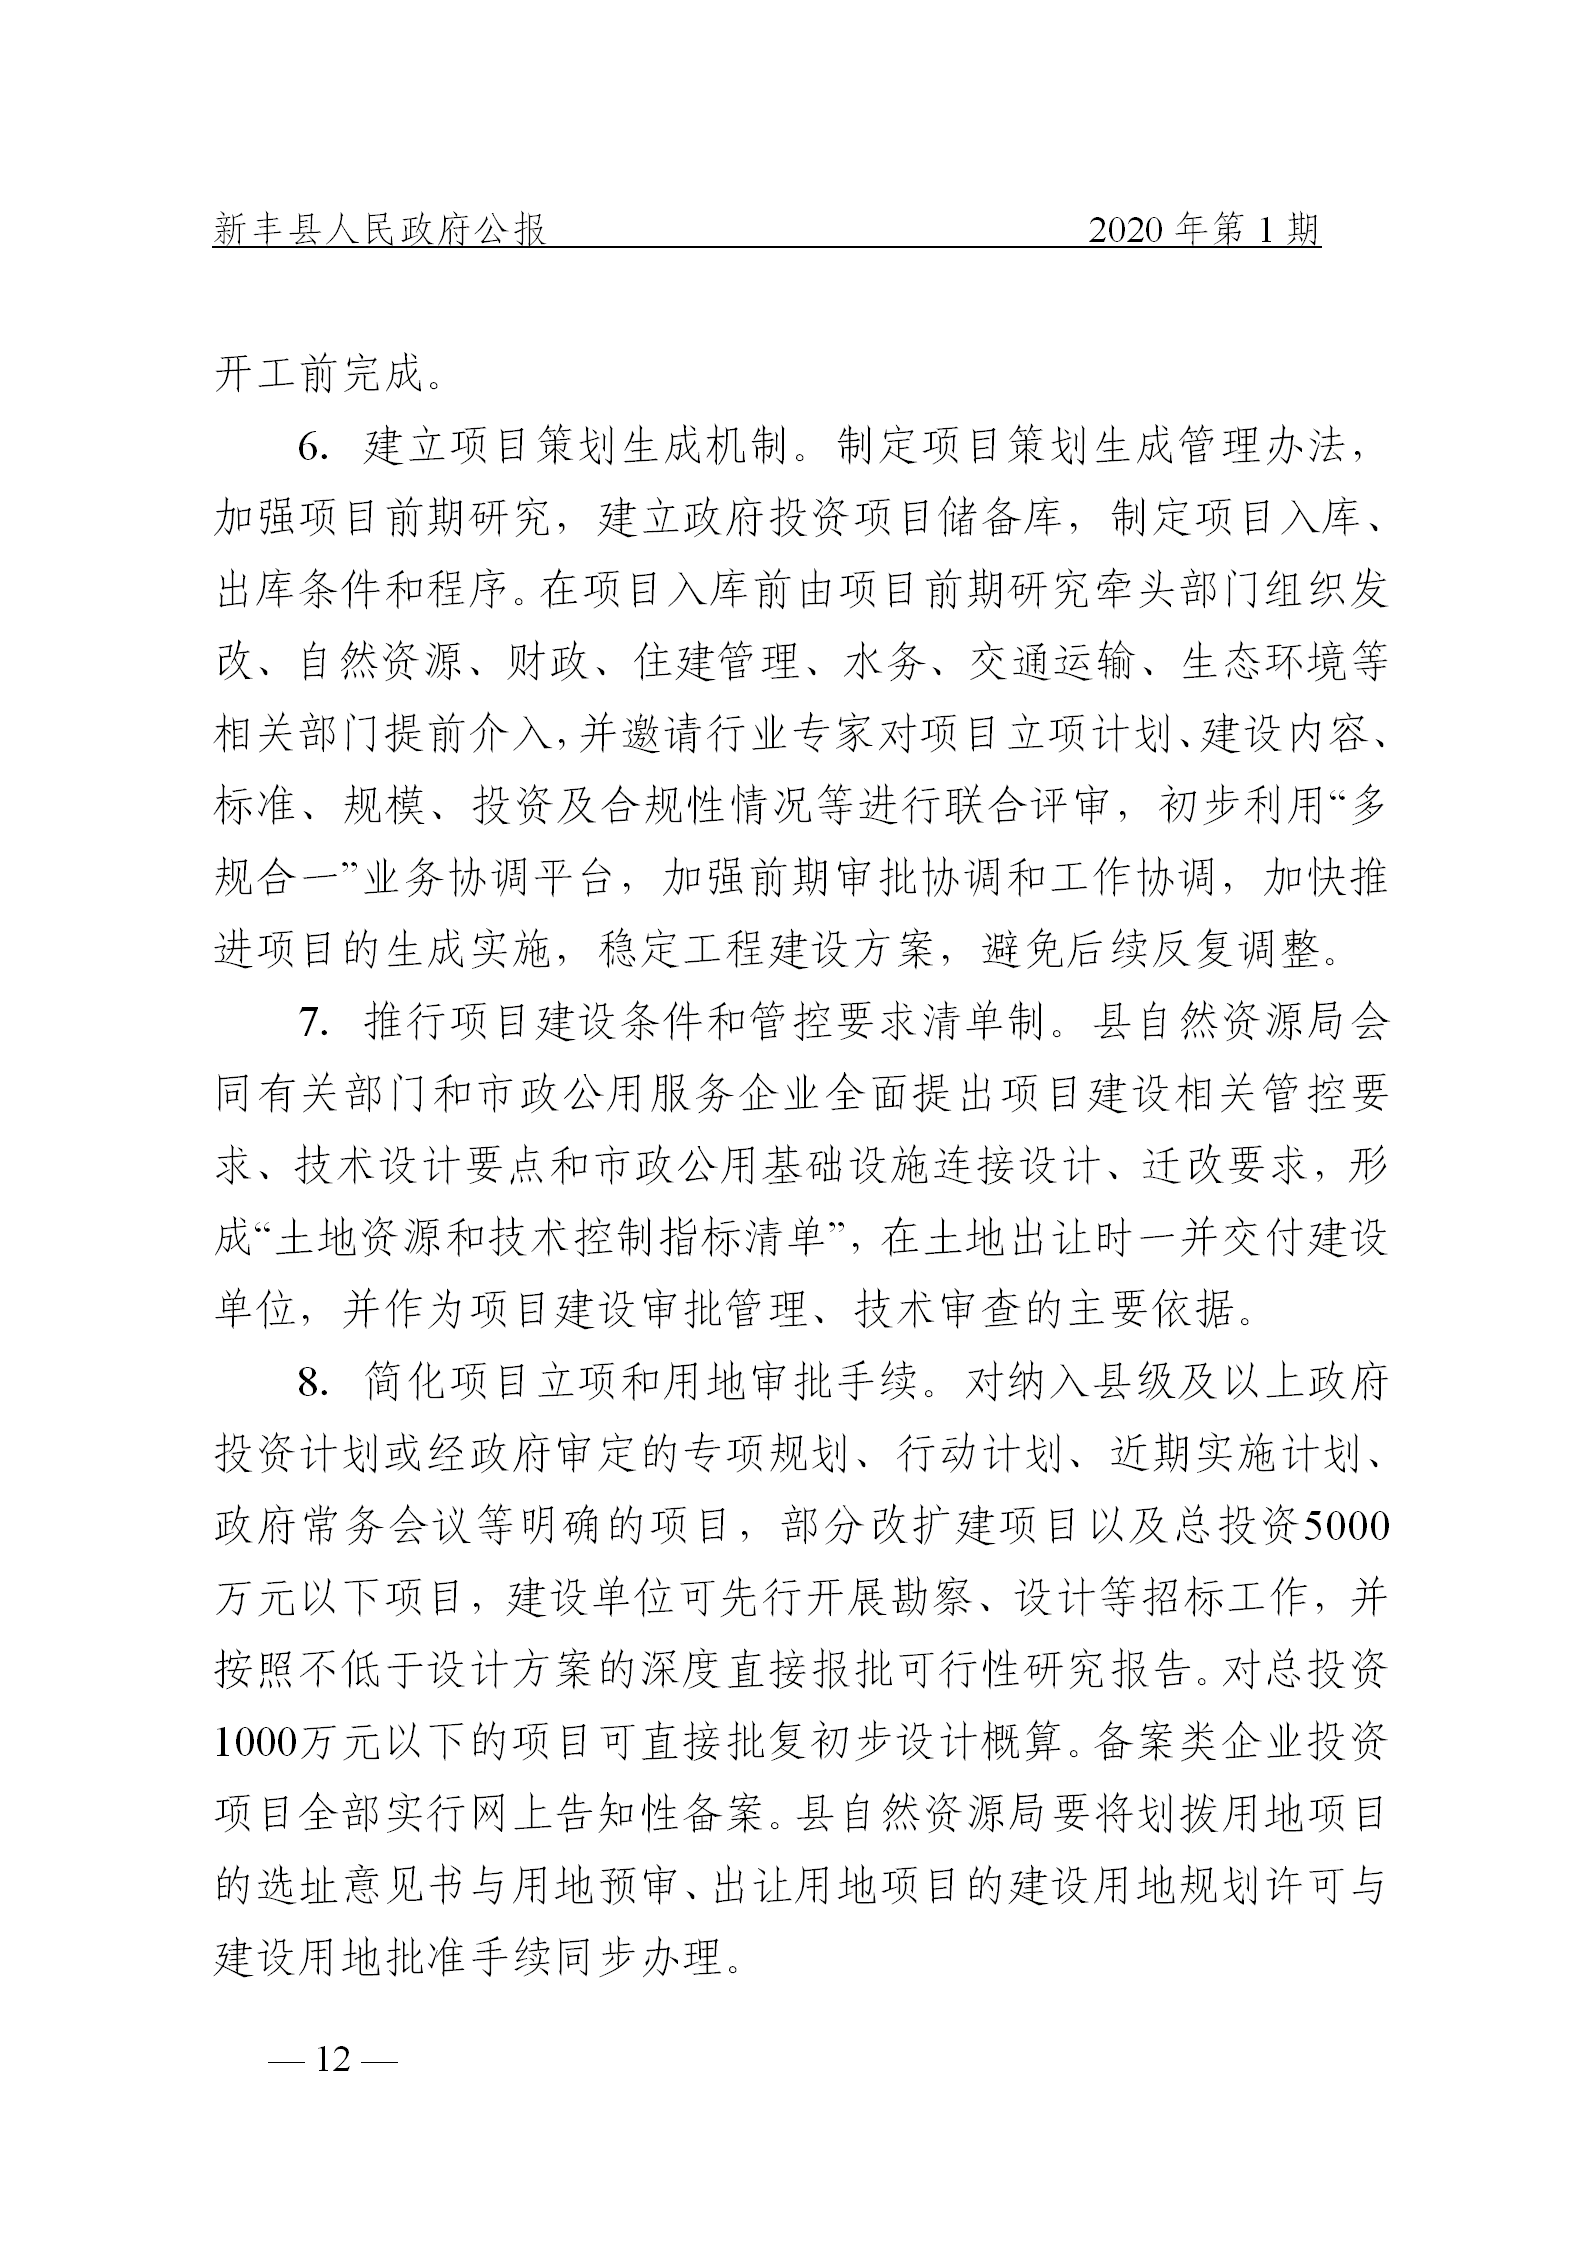 《新丰县人民政府公报》2020年第1期(1)_12.png